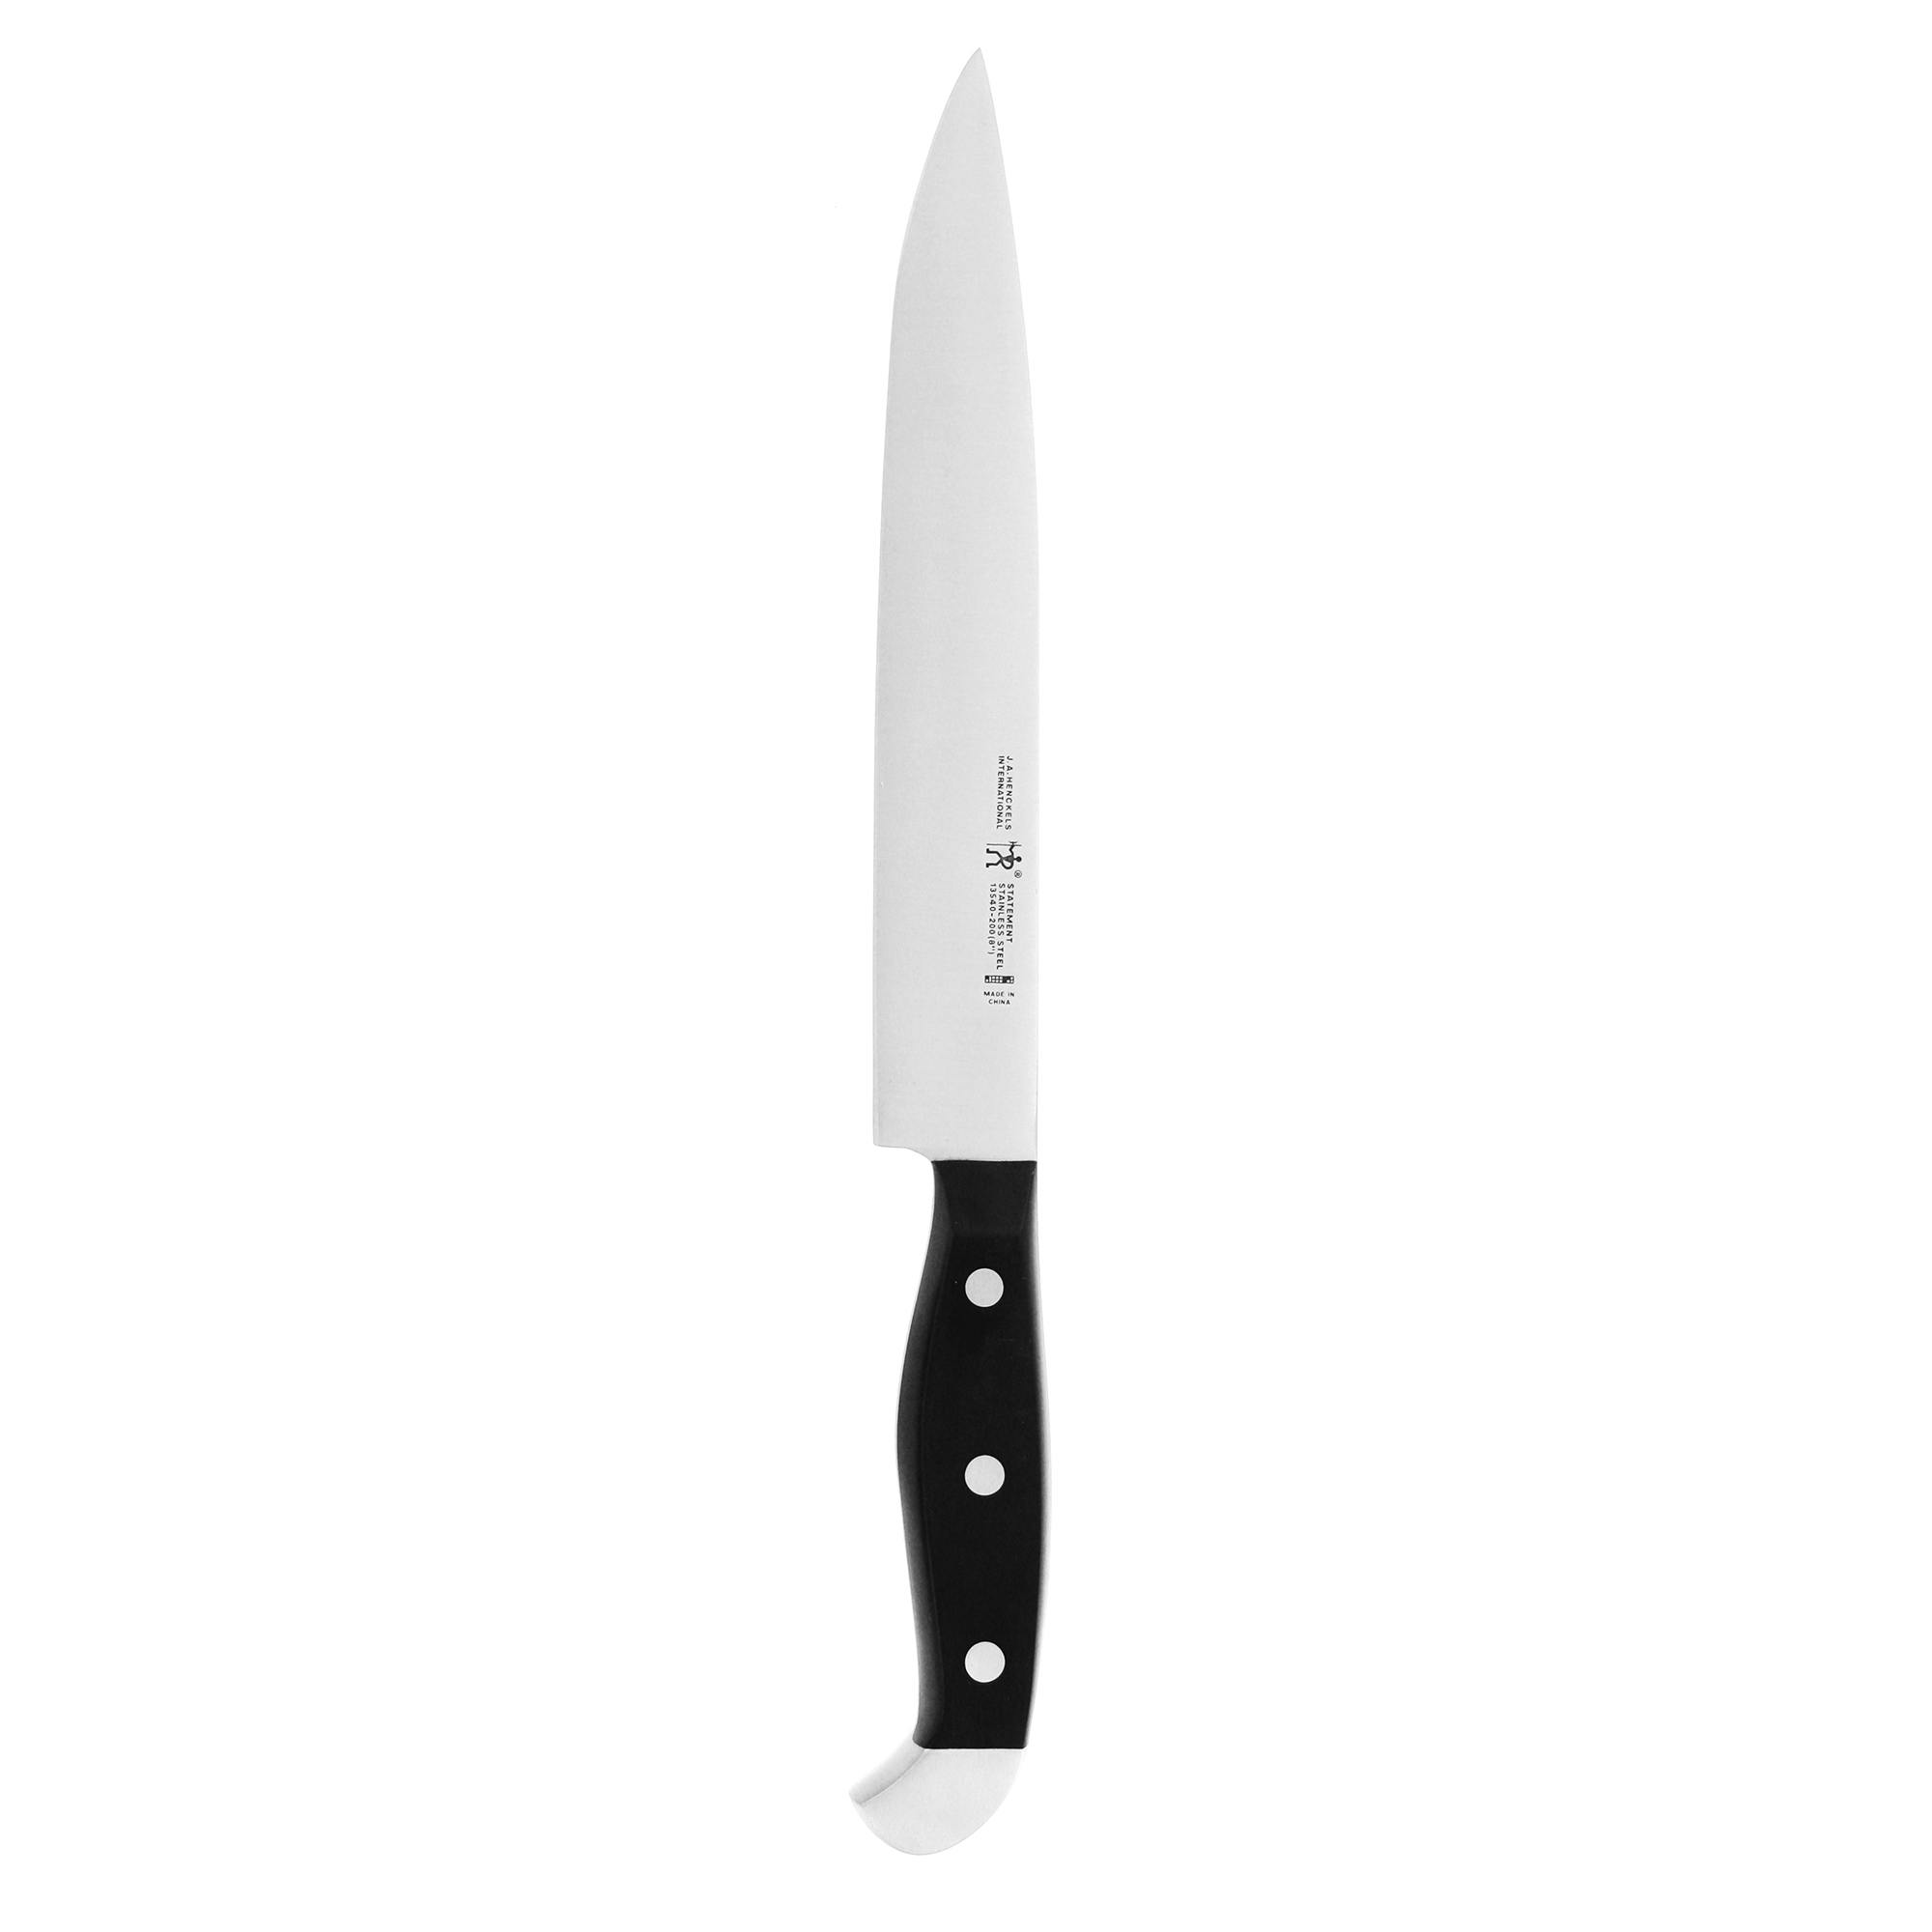 Henckels Statement 8-inch Slicing Knife